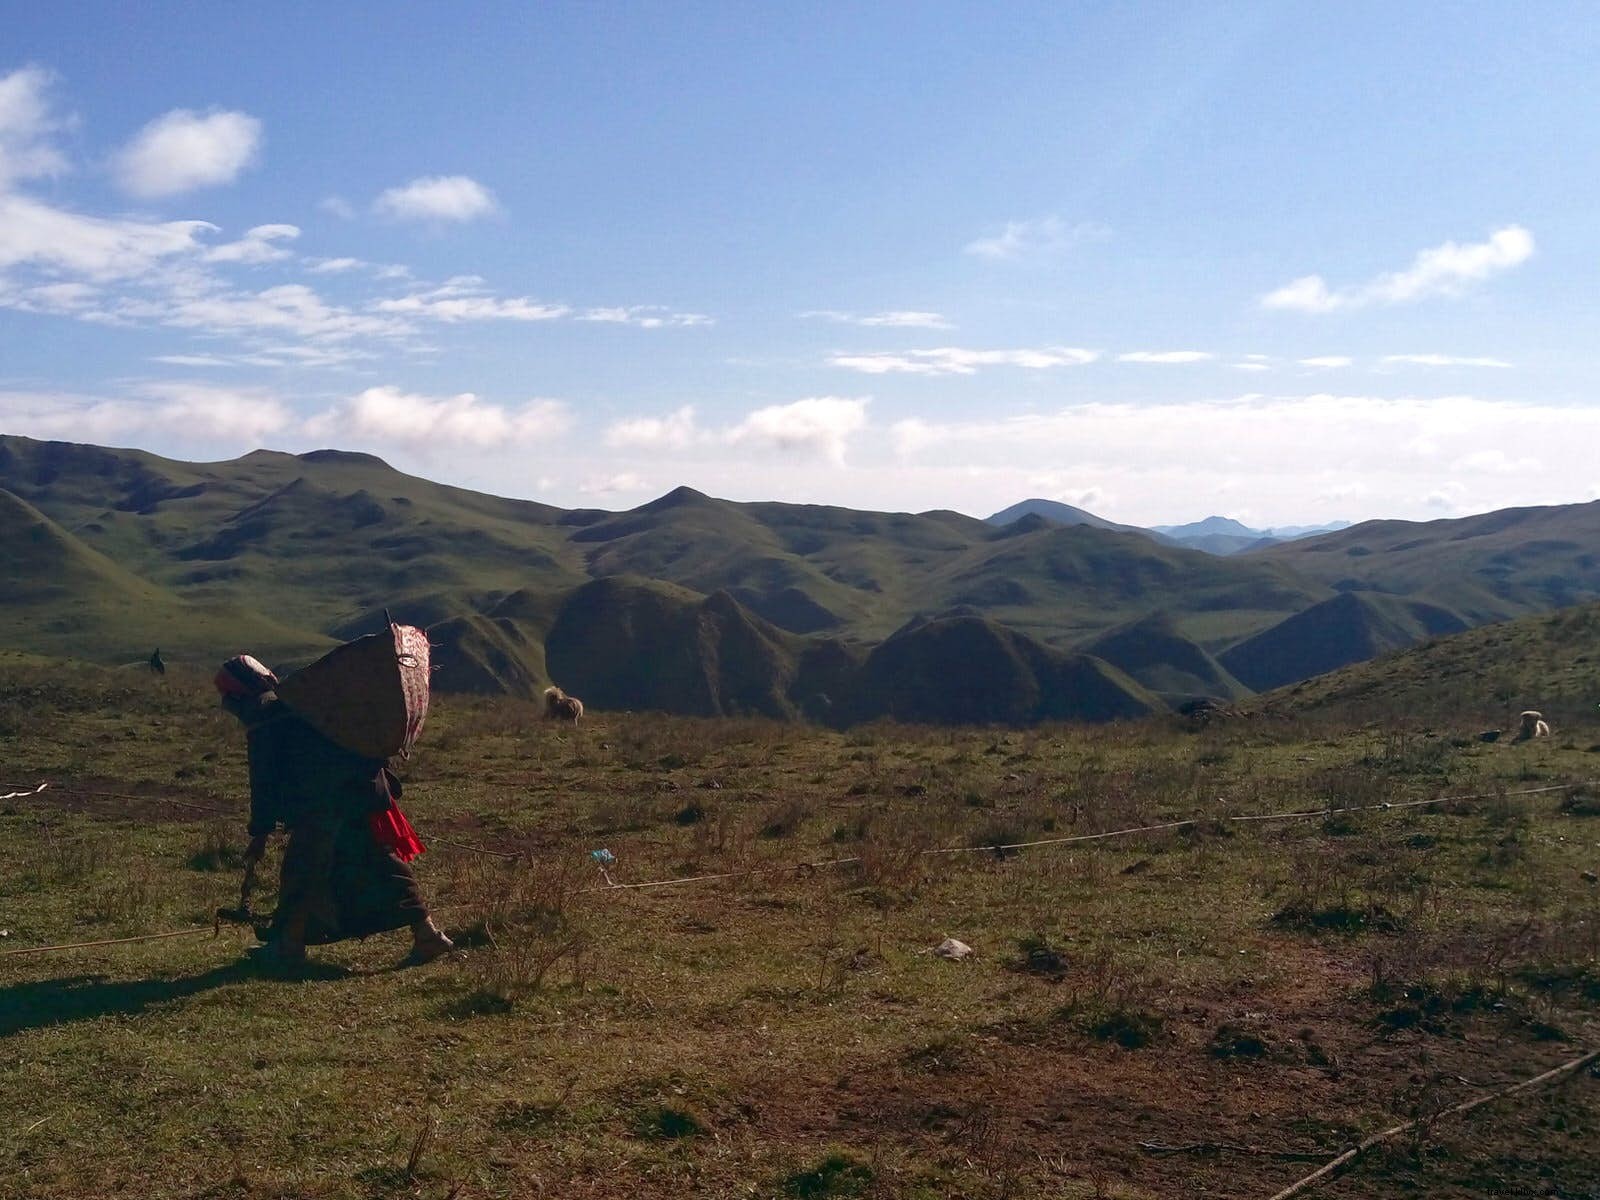 Dormir sob o cabelo de iaque:a vida com os nômades tibetanos de Gansu 